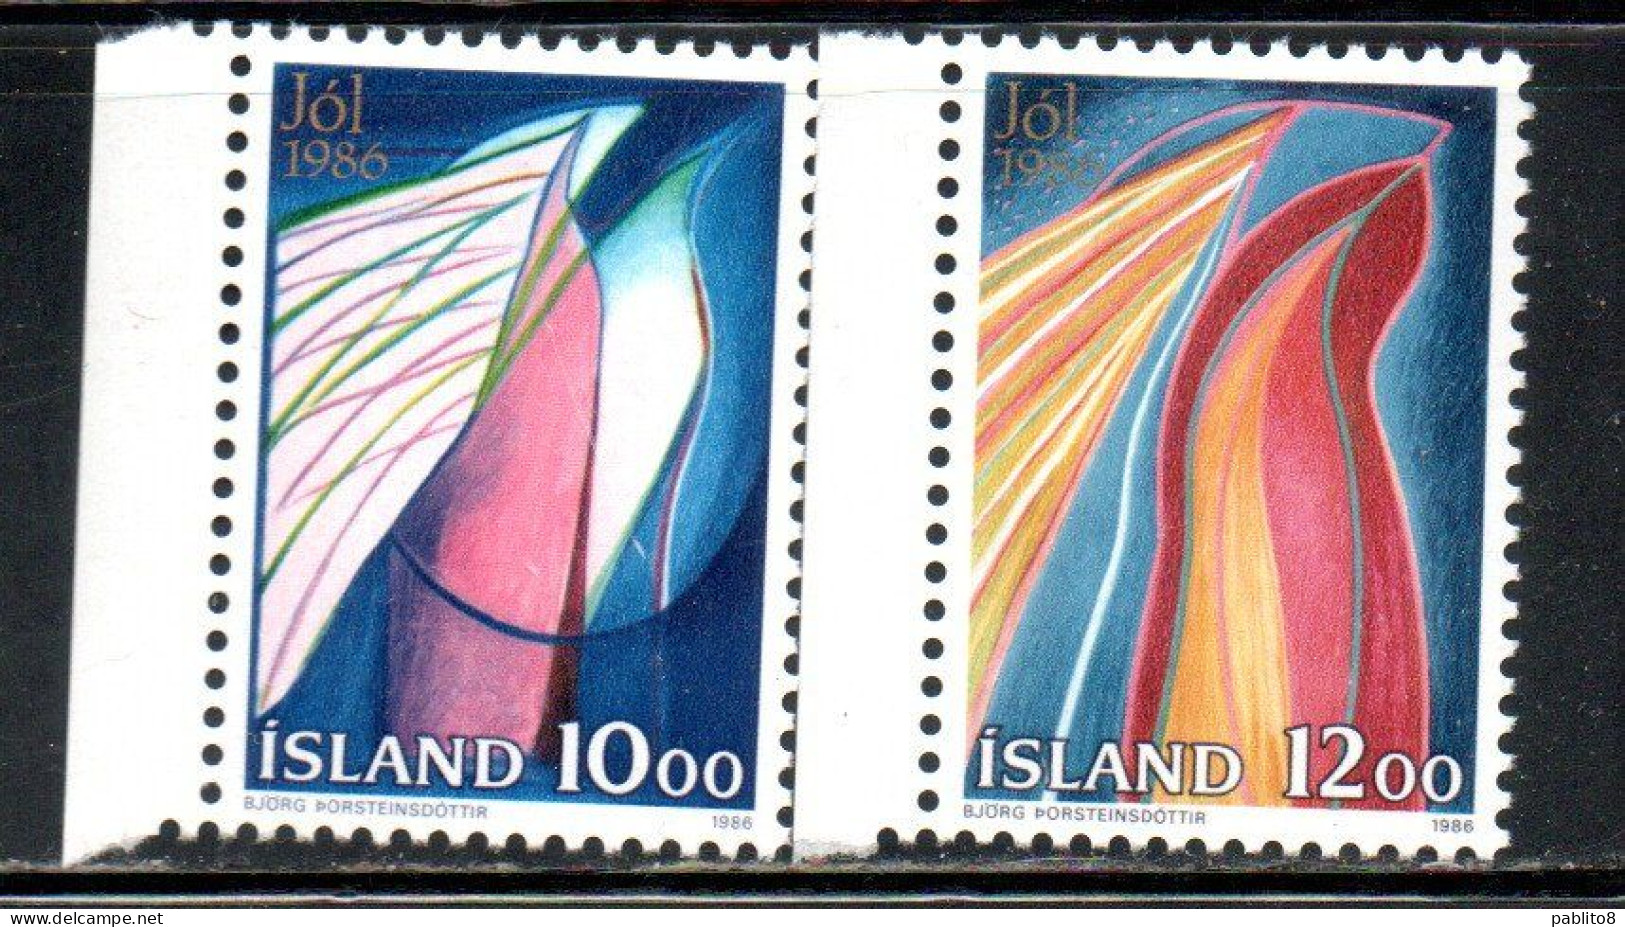 ISLANDA ICELAND ISLANDE ISLAND 1986 CHRISTMAS NATALE NOEL WEIHNACHTEN NAVIDAD JOL COMPLETE SET SERIE COMPLETA MNH - Ongebruikt